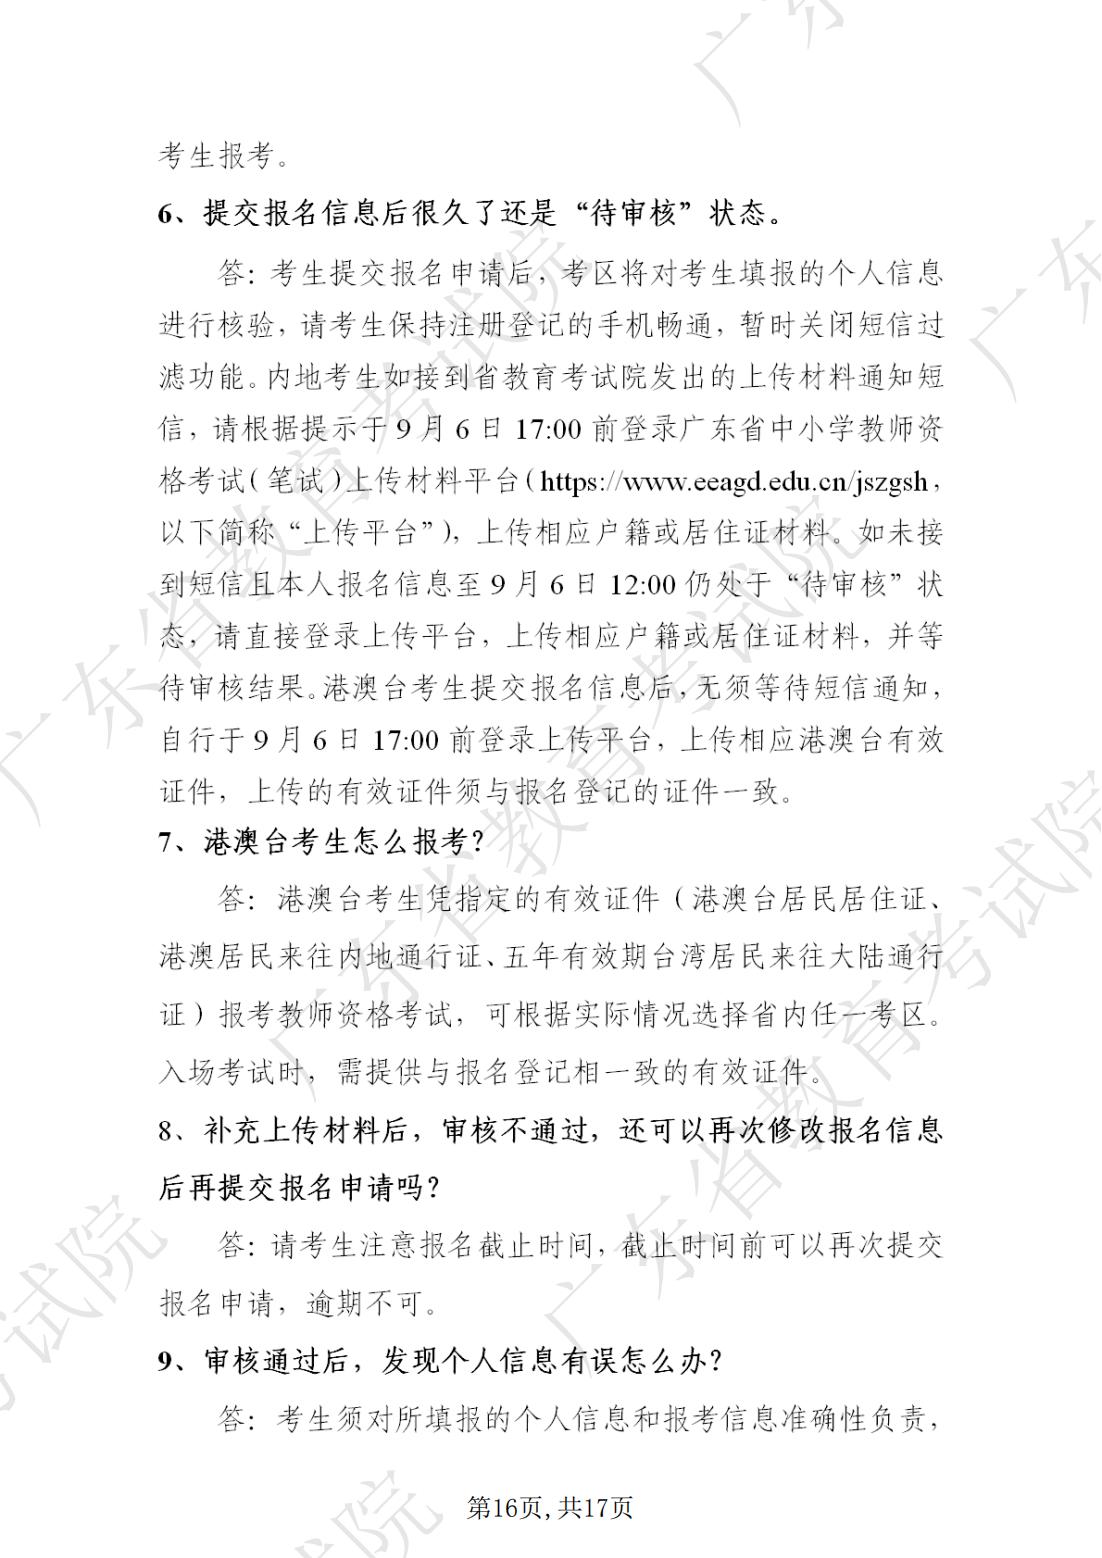 2022-08-18  关于发布《广东省2022年下半年中小学教师资格考试笔试通告》的请示_15.jpg